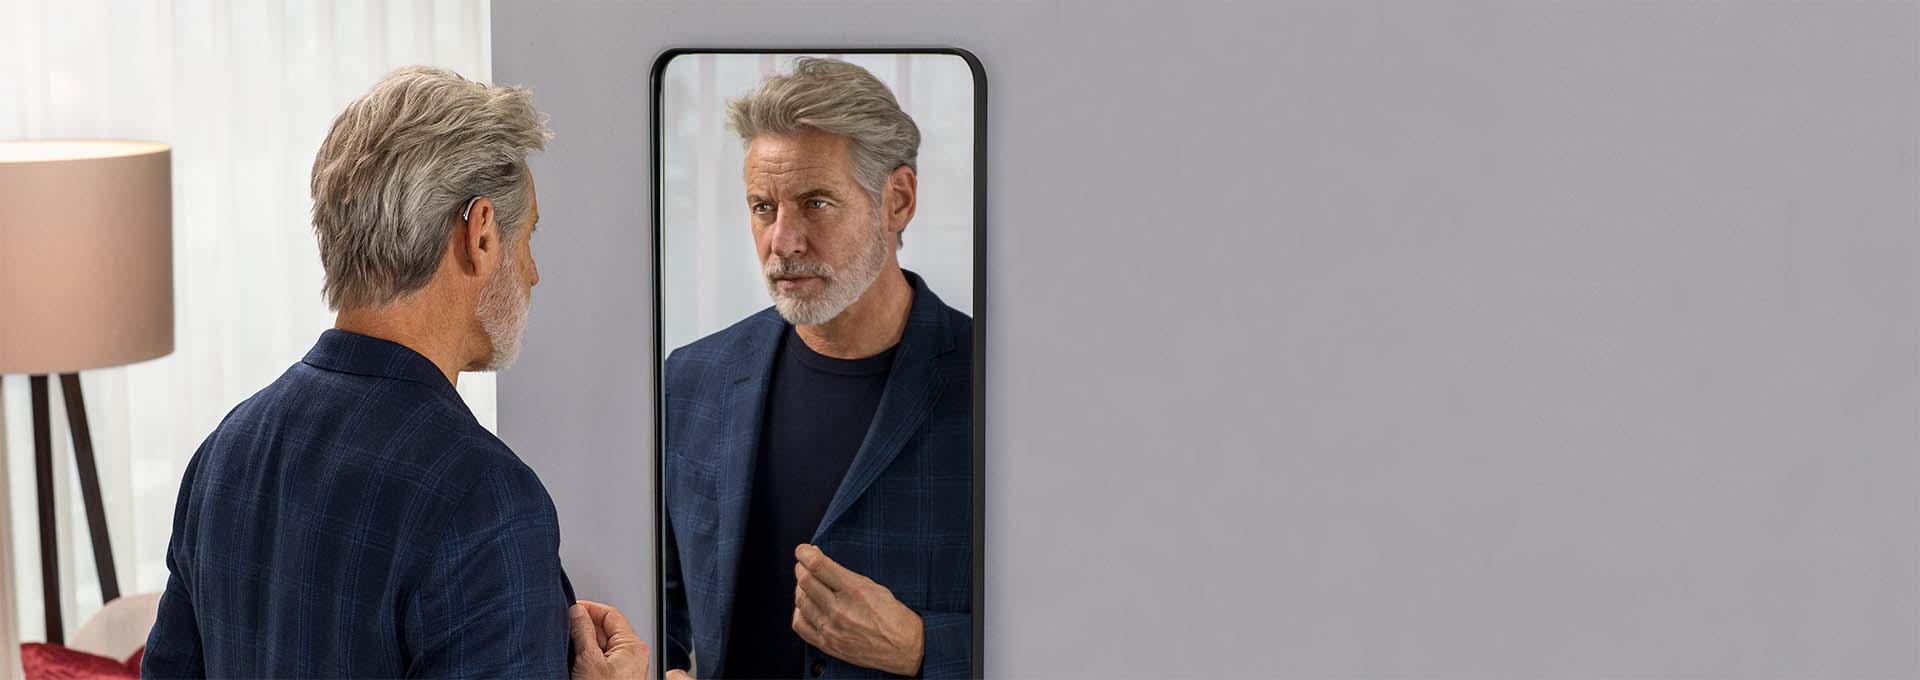 Homme portant des appareils auditifs Bernafon Alpha rechargeables miniBTE T R, debout, regardant dans un miroir, il porte une veste de costume.